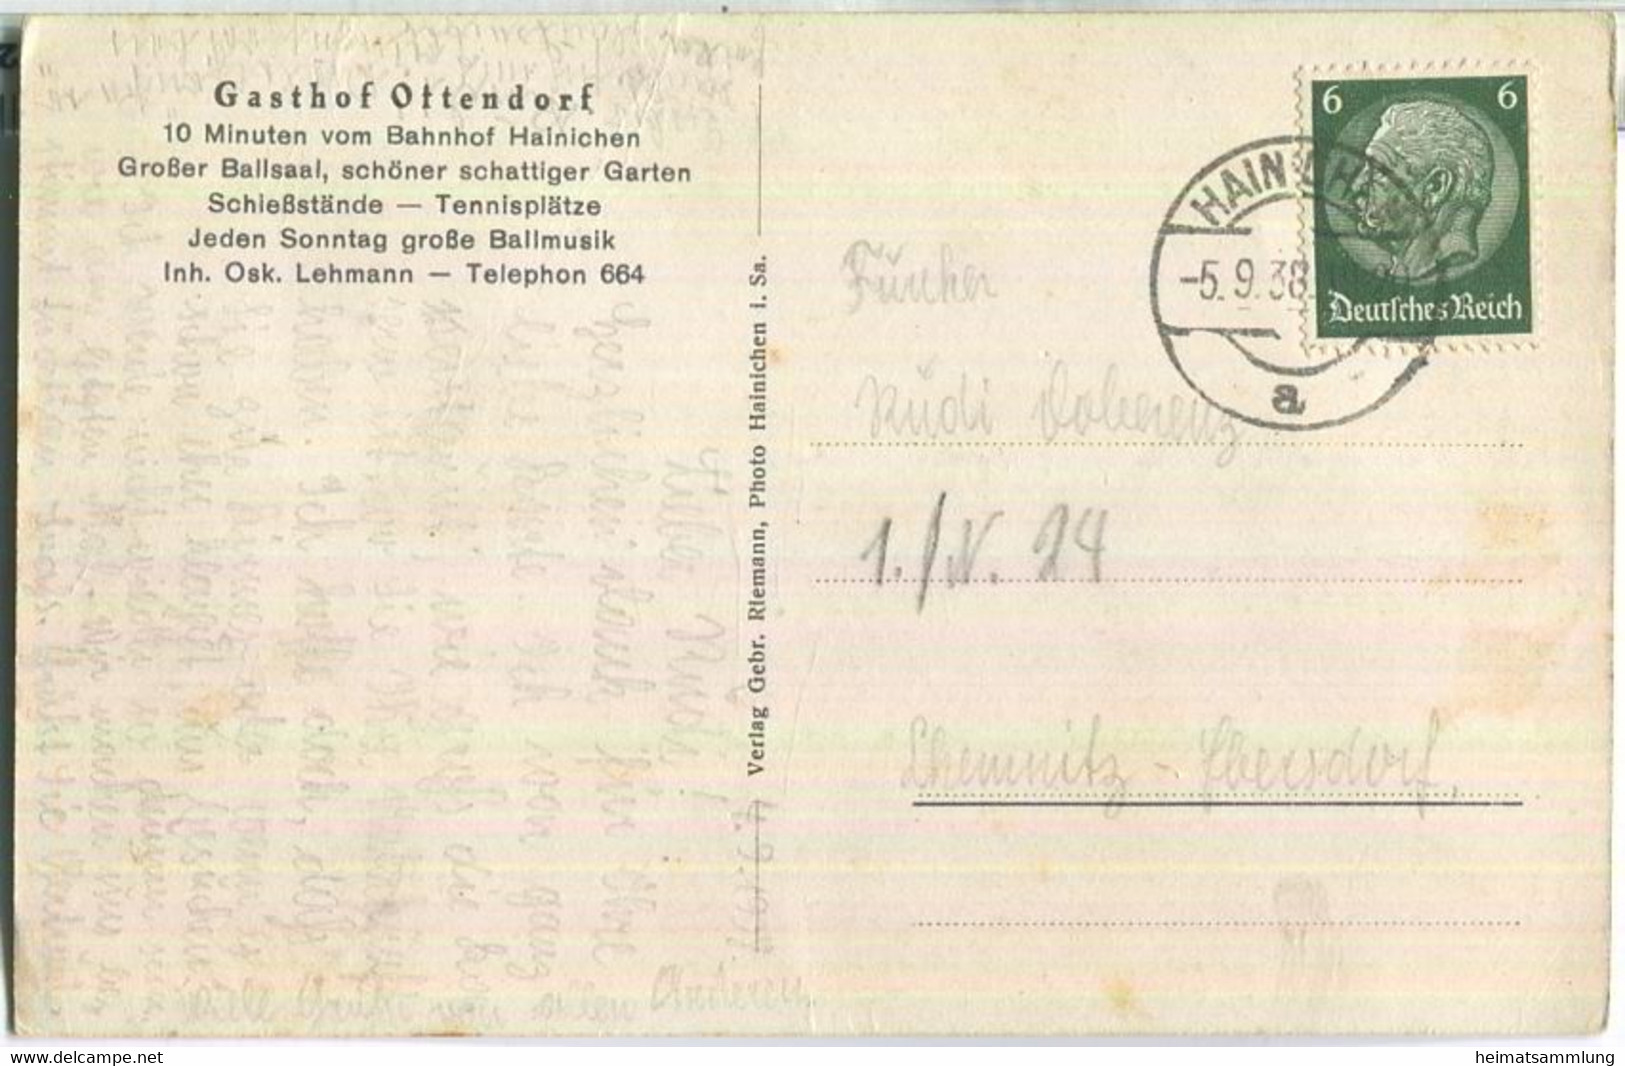 Hainichen - Gasthof Ottendorf - Inhaber Oskar Lehmann - Verlag Gebr. Riemann Hainichen - Hainichen